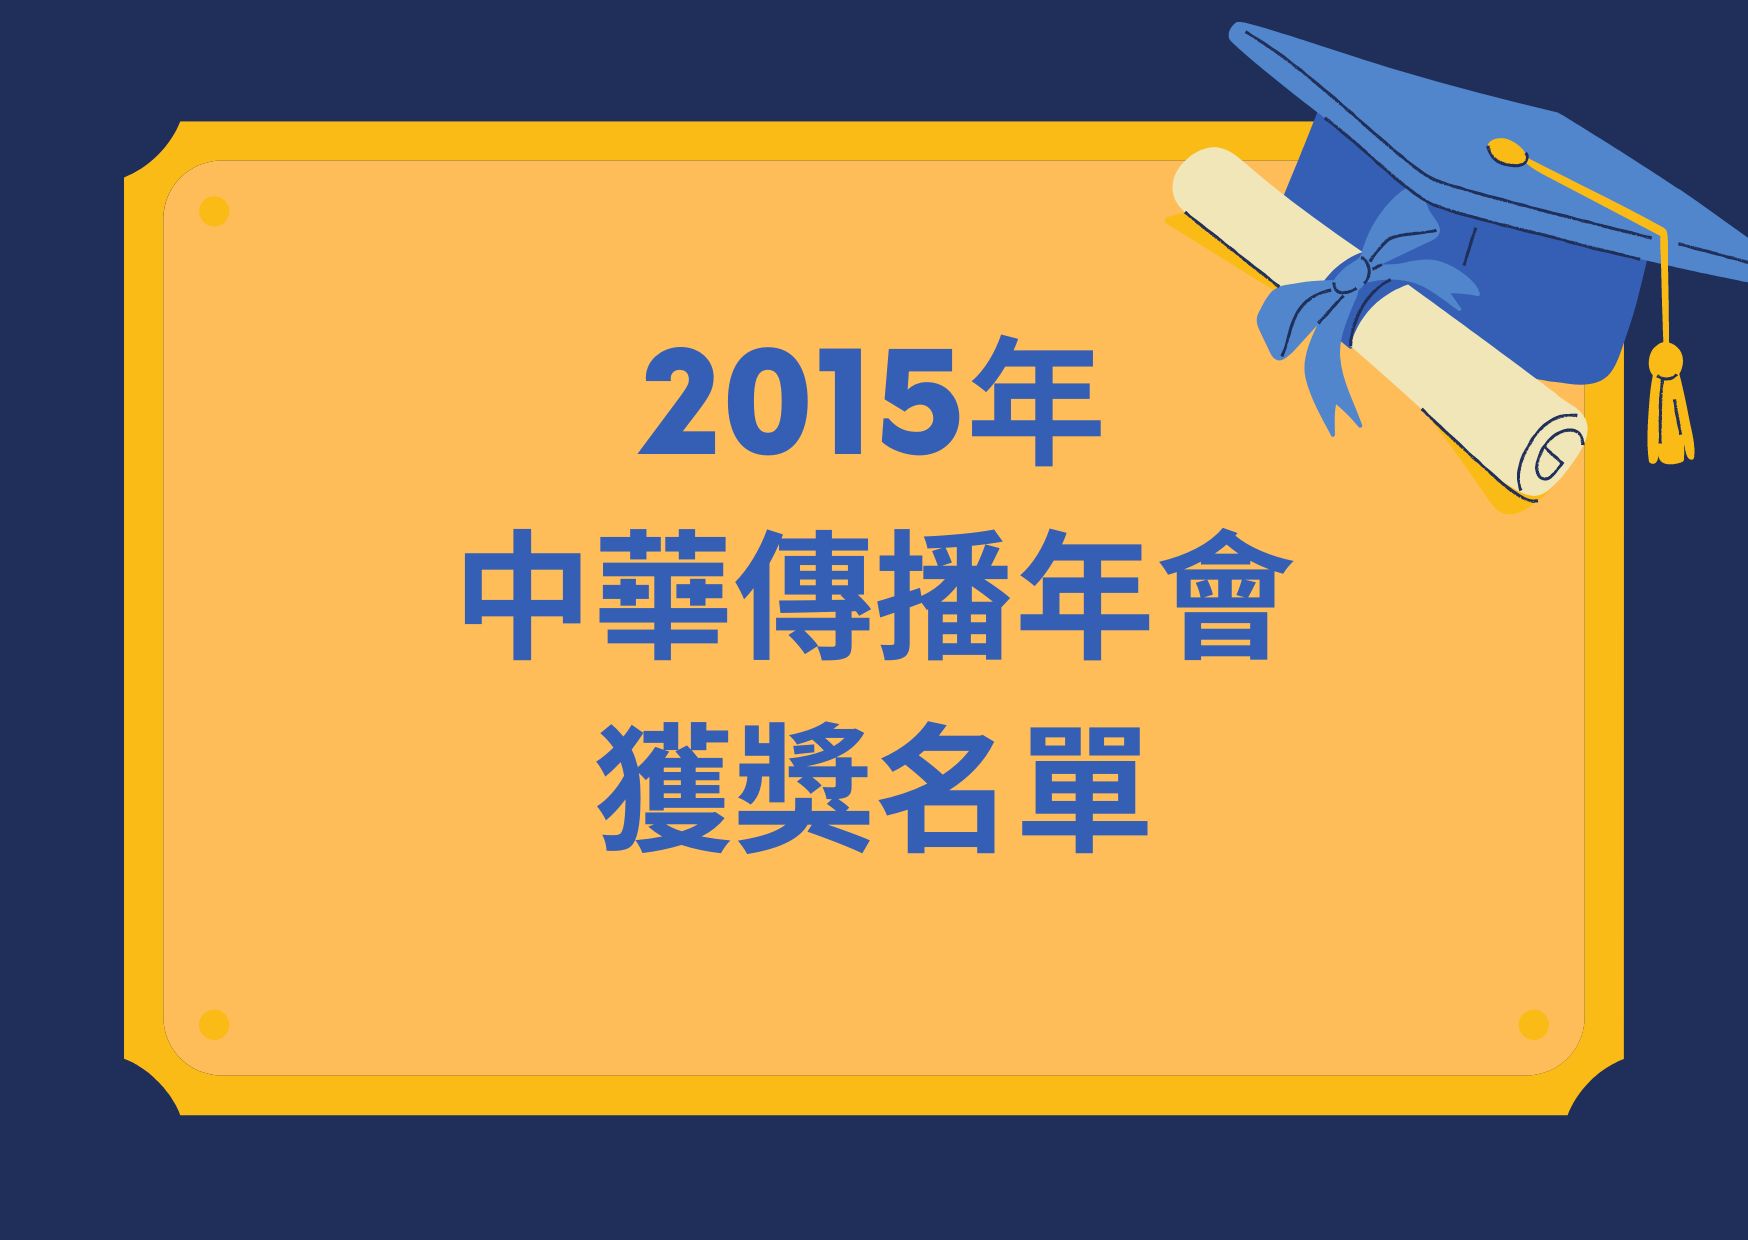 2015年中華傳播年會獲獎名單